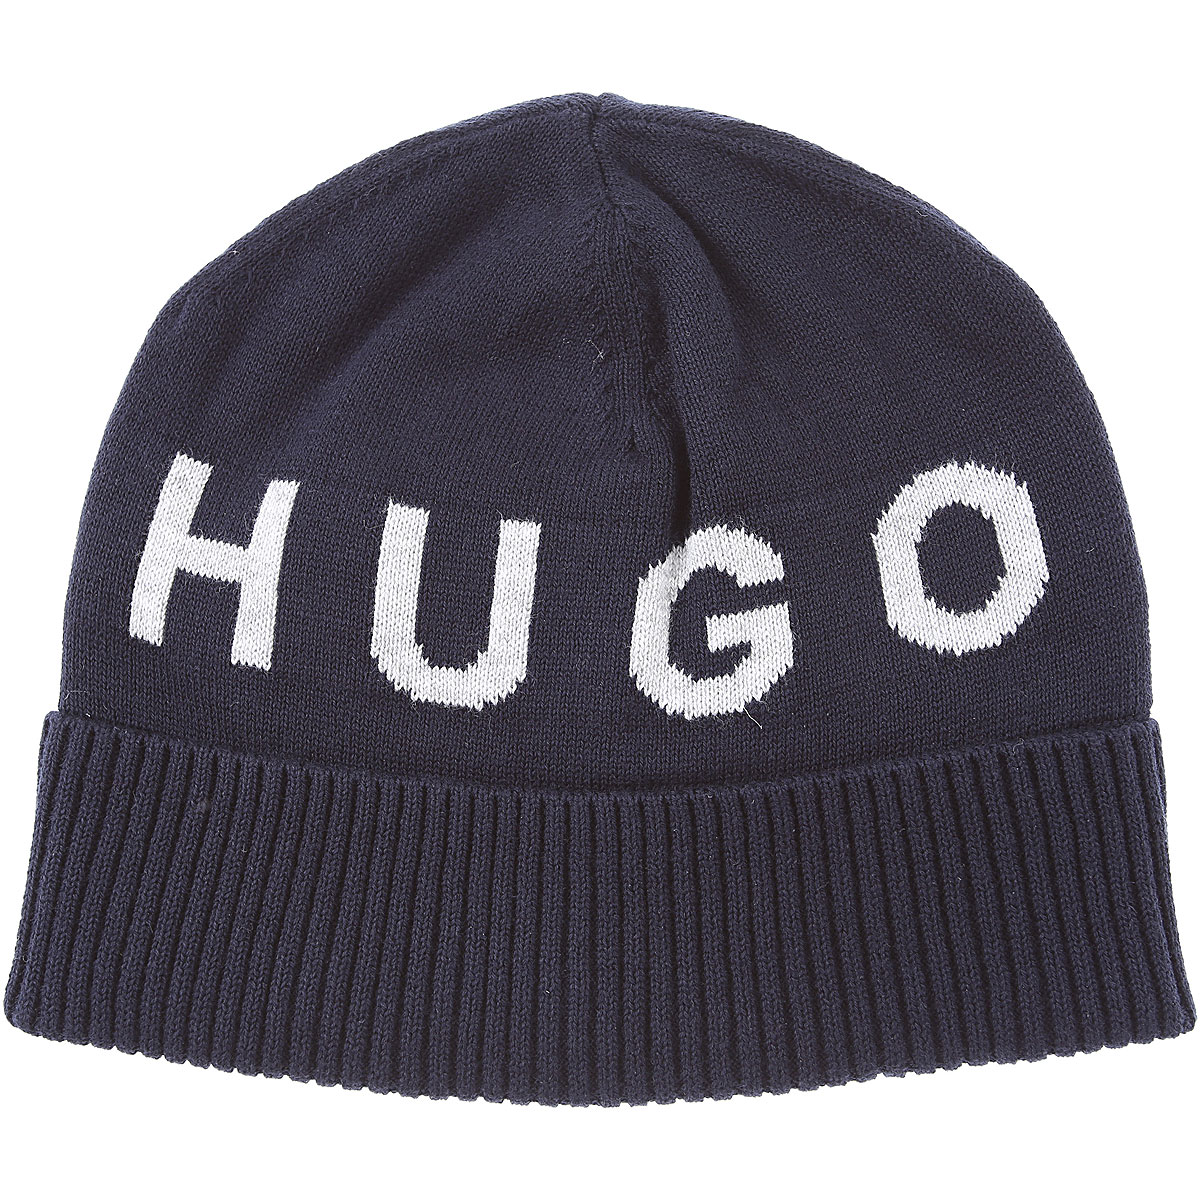 Hugo Boss Kinder Hut für Jungen Günstig im Sale, Blau, Baumwolle, 2017, 46 48 50 60